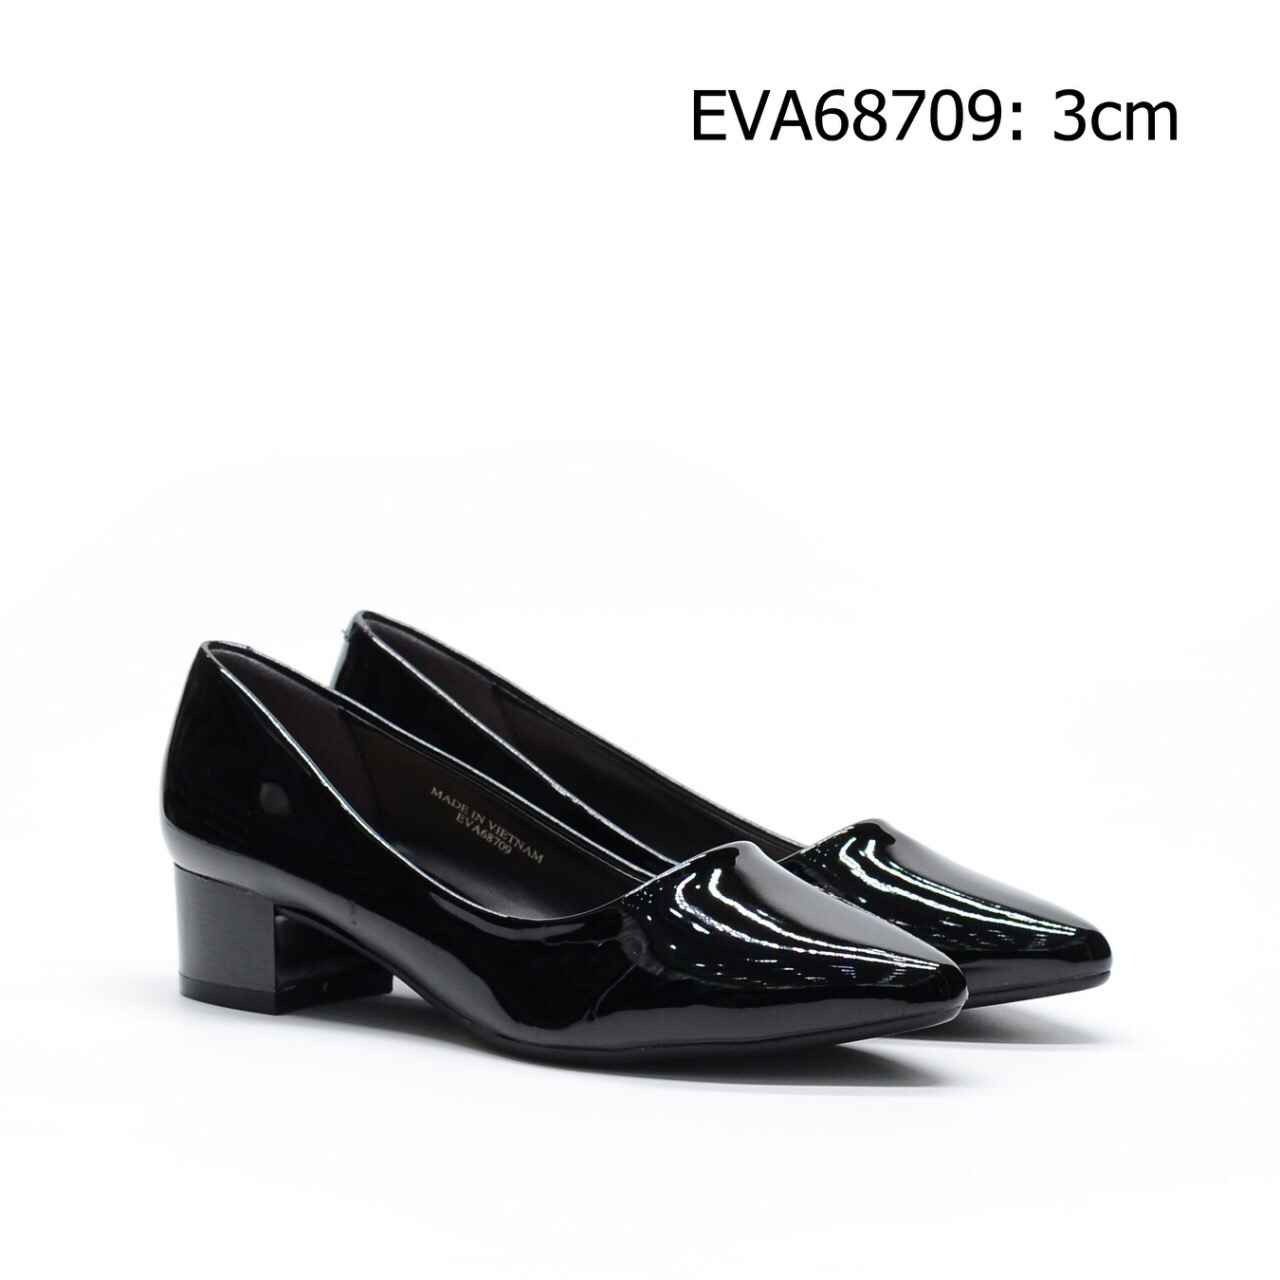 Giày nữ công sở đế vuông EVA68709 chất liệu da bóng trẻ trung, quyến rũ